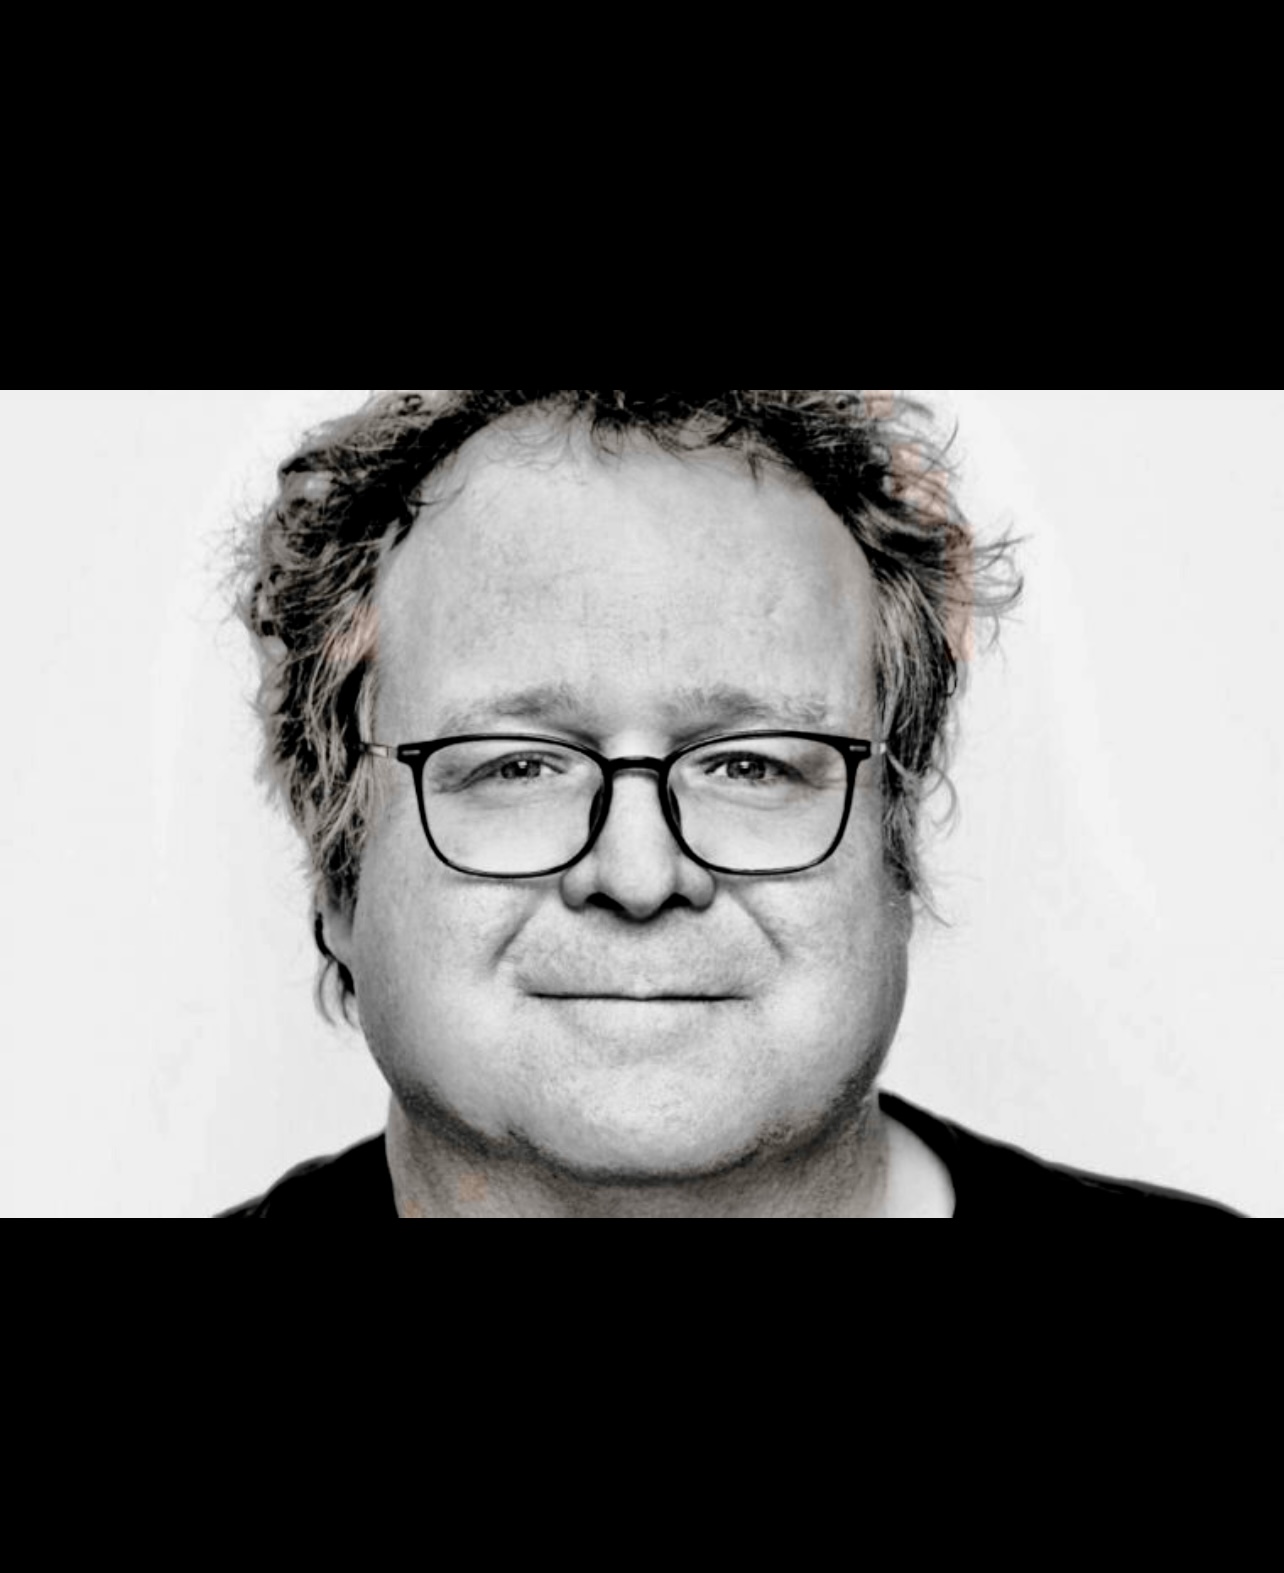 Une photo en noir et blanc d'un homme à lunettes, dressant le portrait de Jean-Sébastien Huot de manière captivante et narrative.